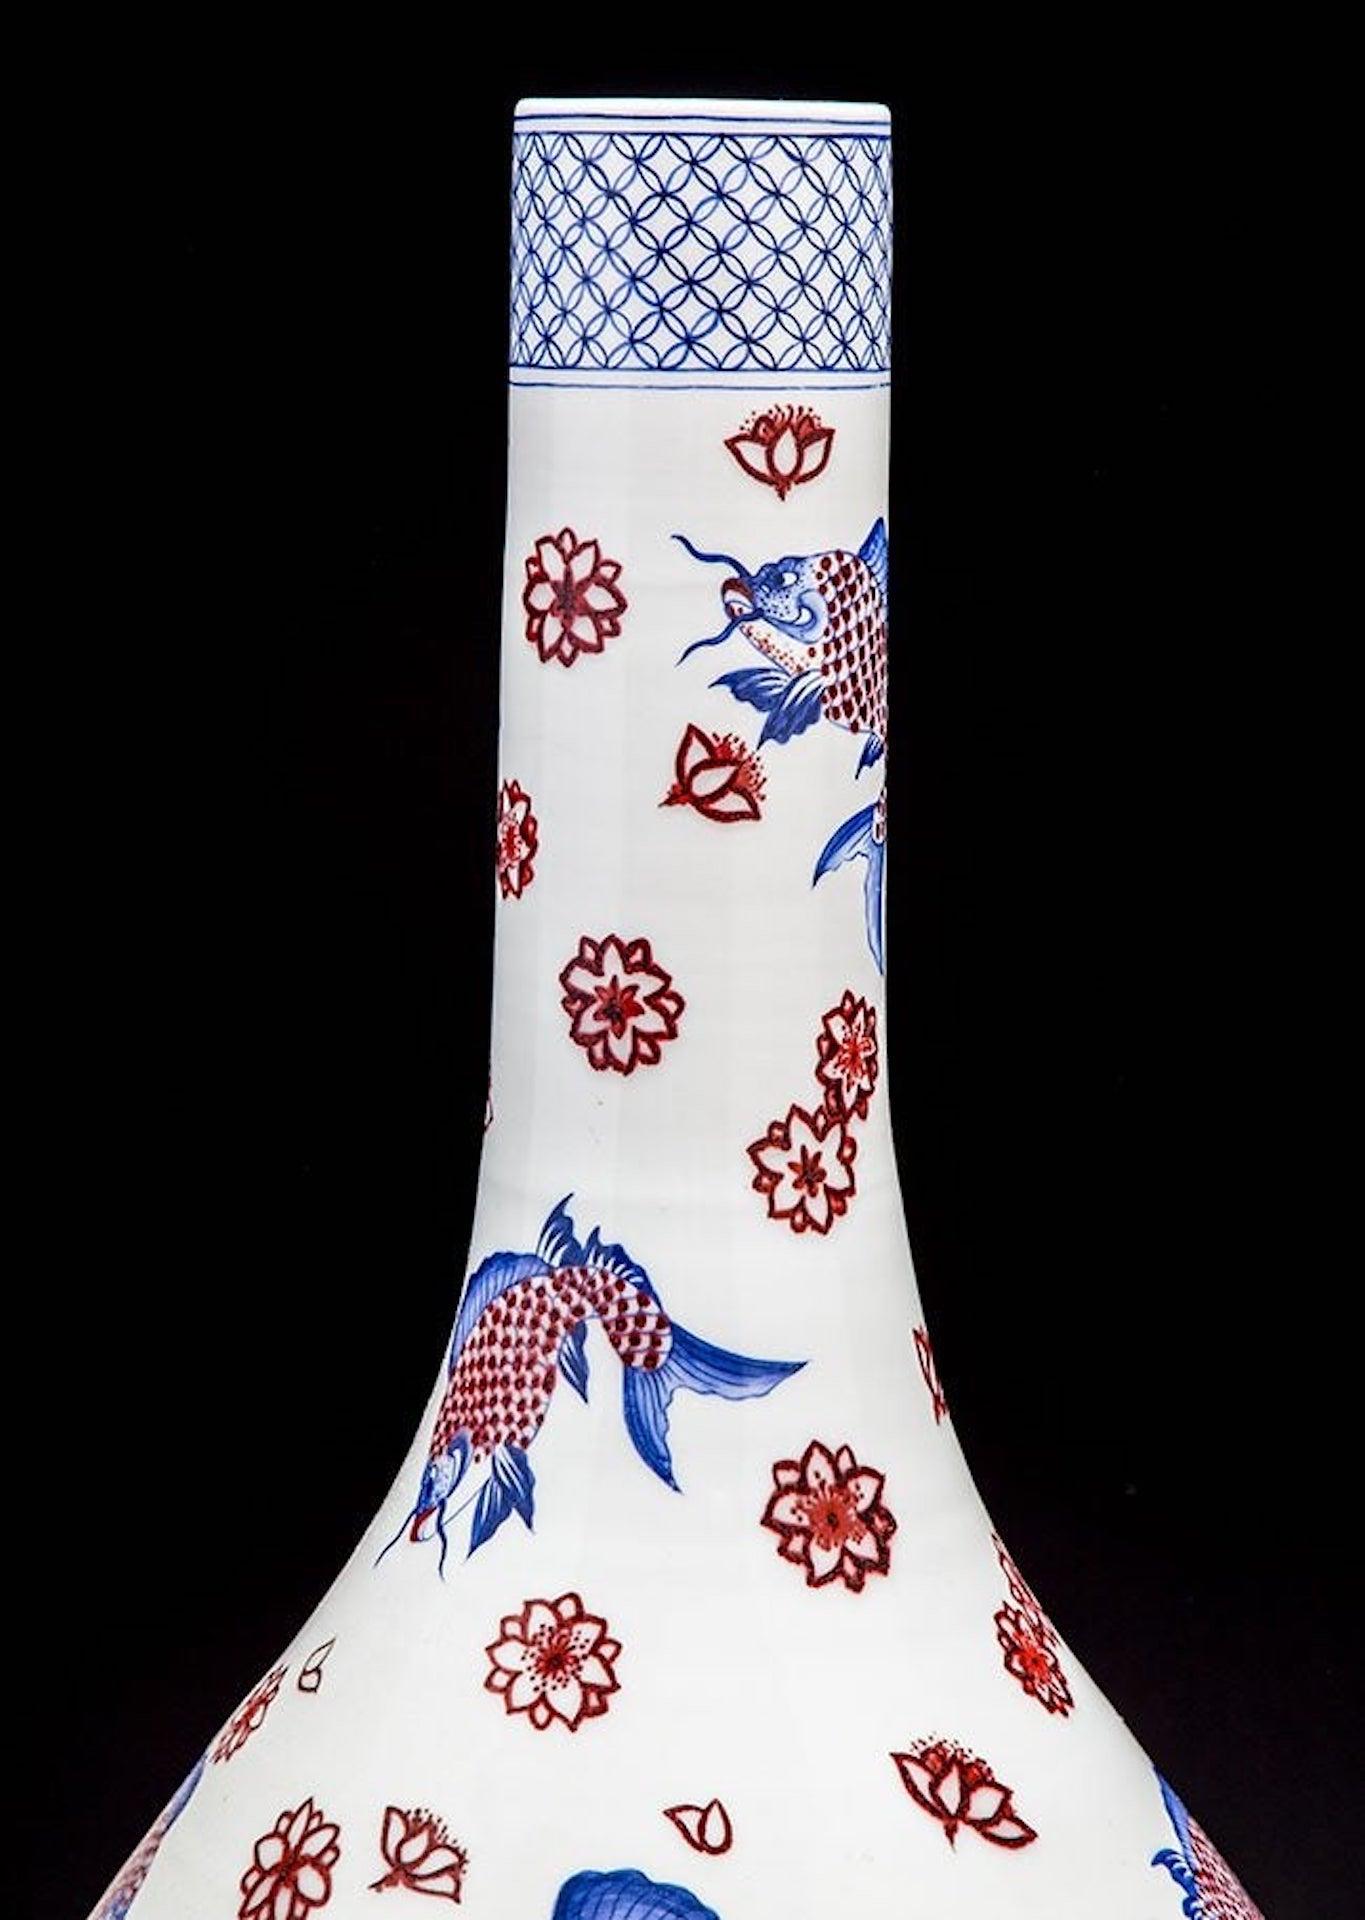 Eine große japanische Imari-Vase
Balusterform mit langem, schmalem Hals, emailliert in Unterglasurblau und Eisenrot mit Welsen und Blumen; signiert.
Maße: Höhe 30 Zoll (76,2 cm)
Breite 15 Zoll (38,1 cm) 
Durchmesser des oberen Randes 3,5 Zoll